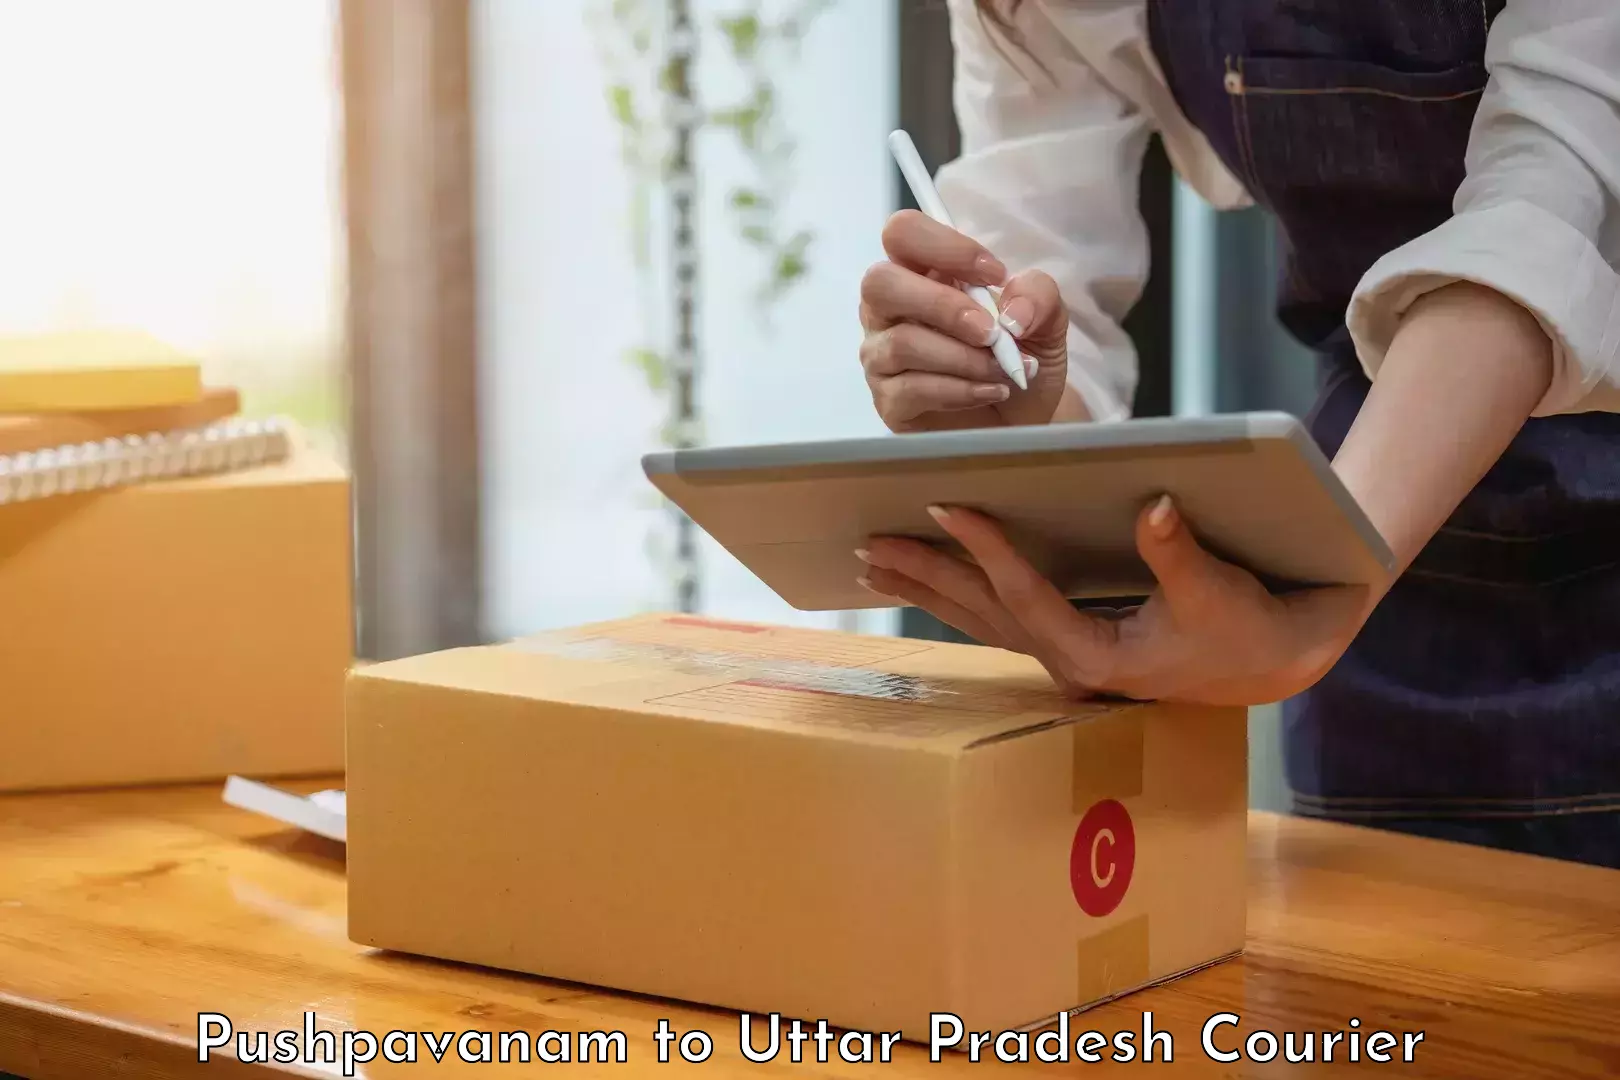 Parcel delivery automation Pushpavanam to Maholi